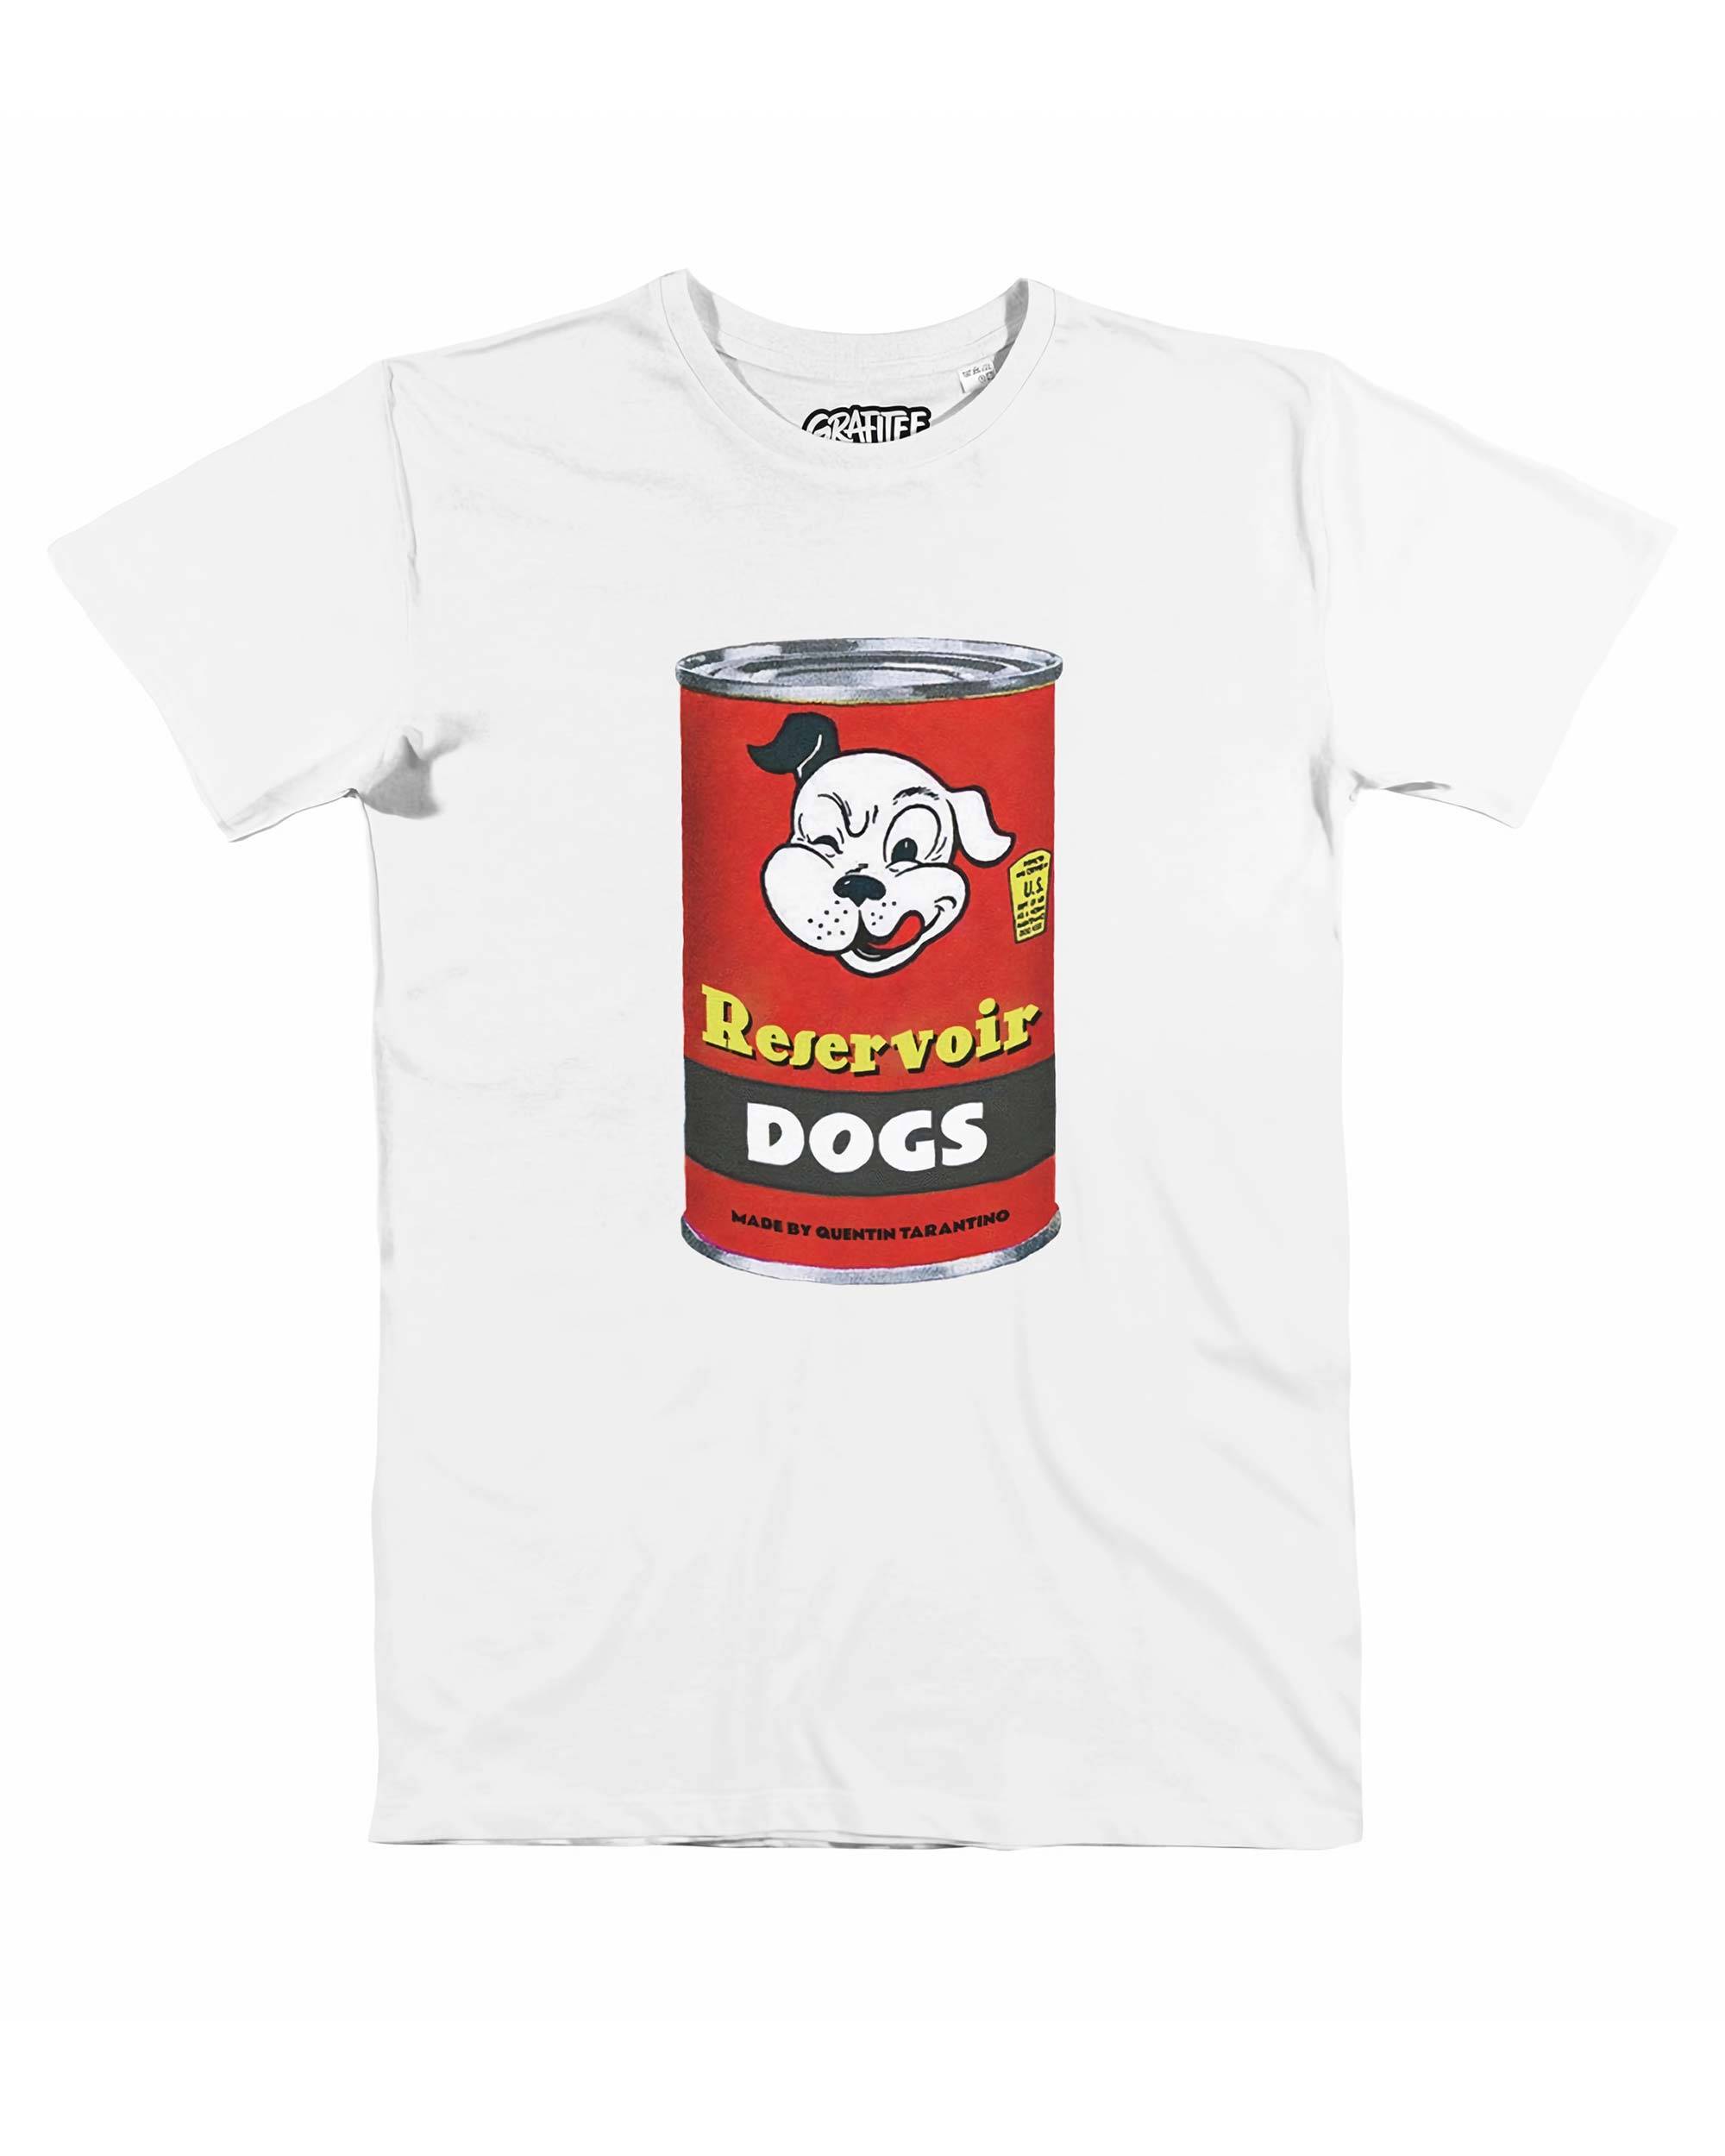 T-shirt Reservoir Dogs Can Grafitee